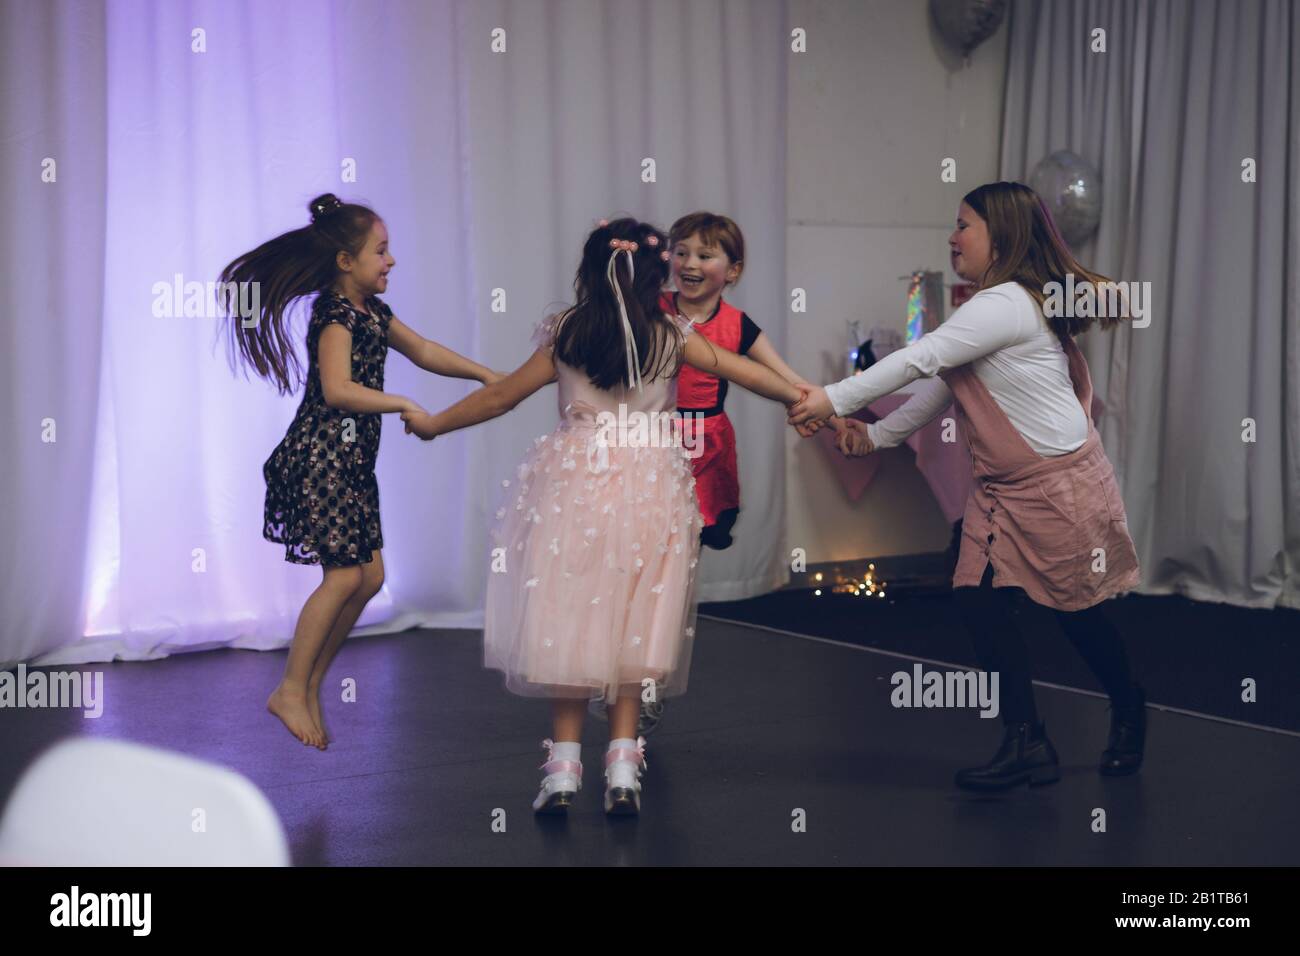 Junge Mädchen tanzen zusammen und halten die Hände auf einer Party Stockfoto